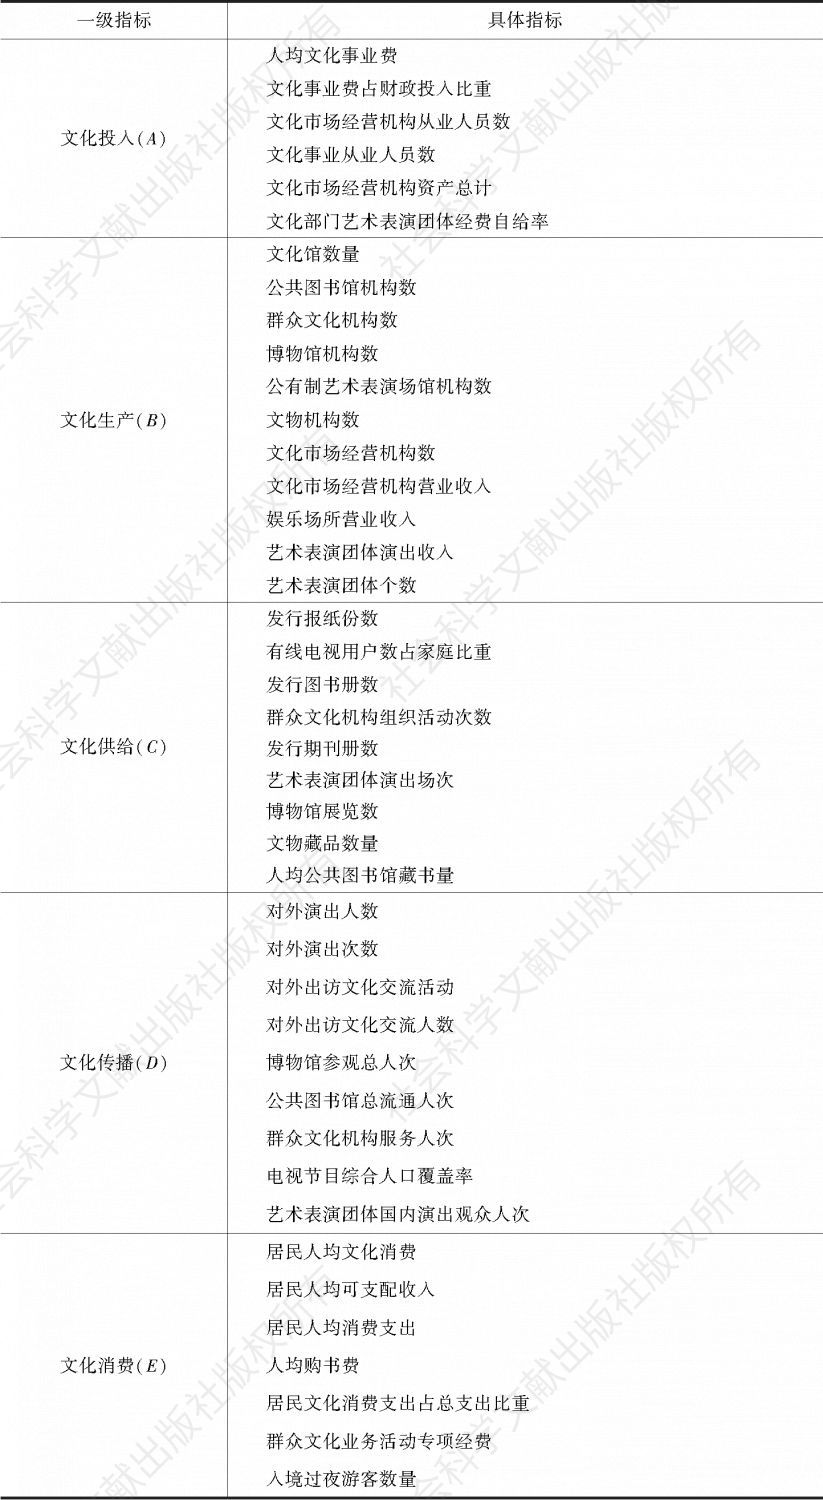 表1 中国文化发展指数评价指标体系